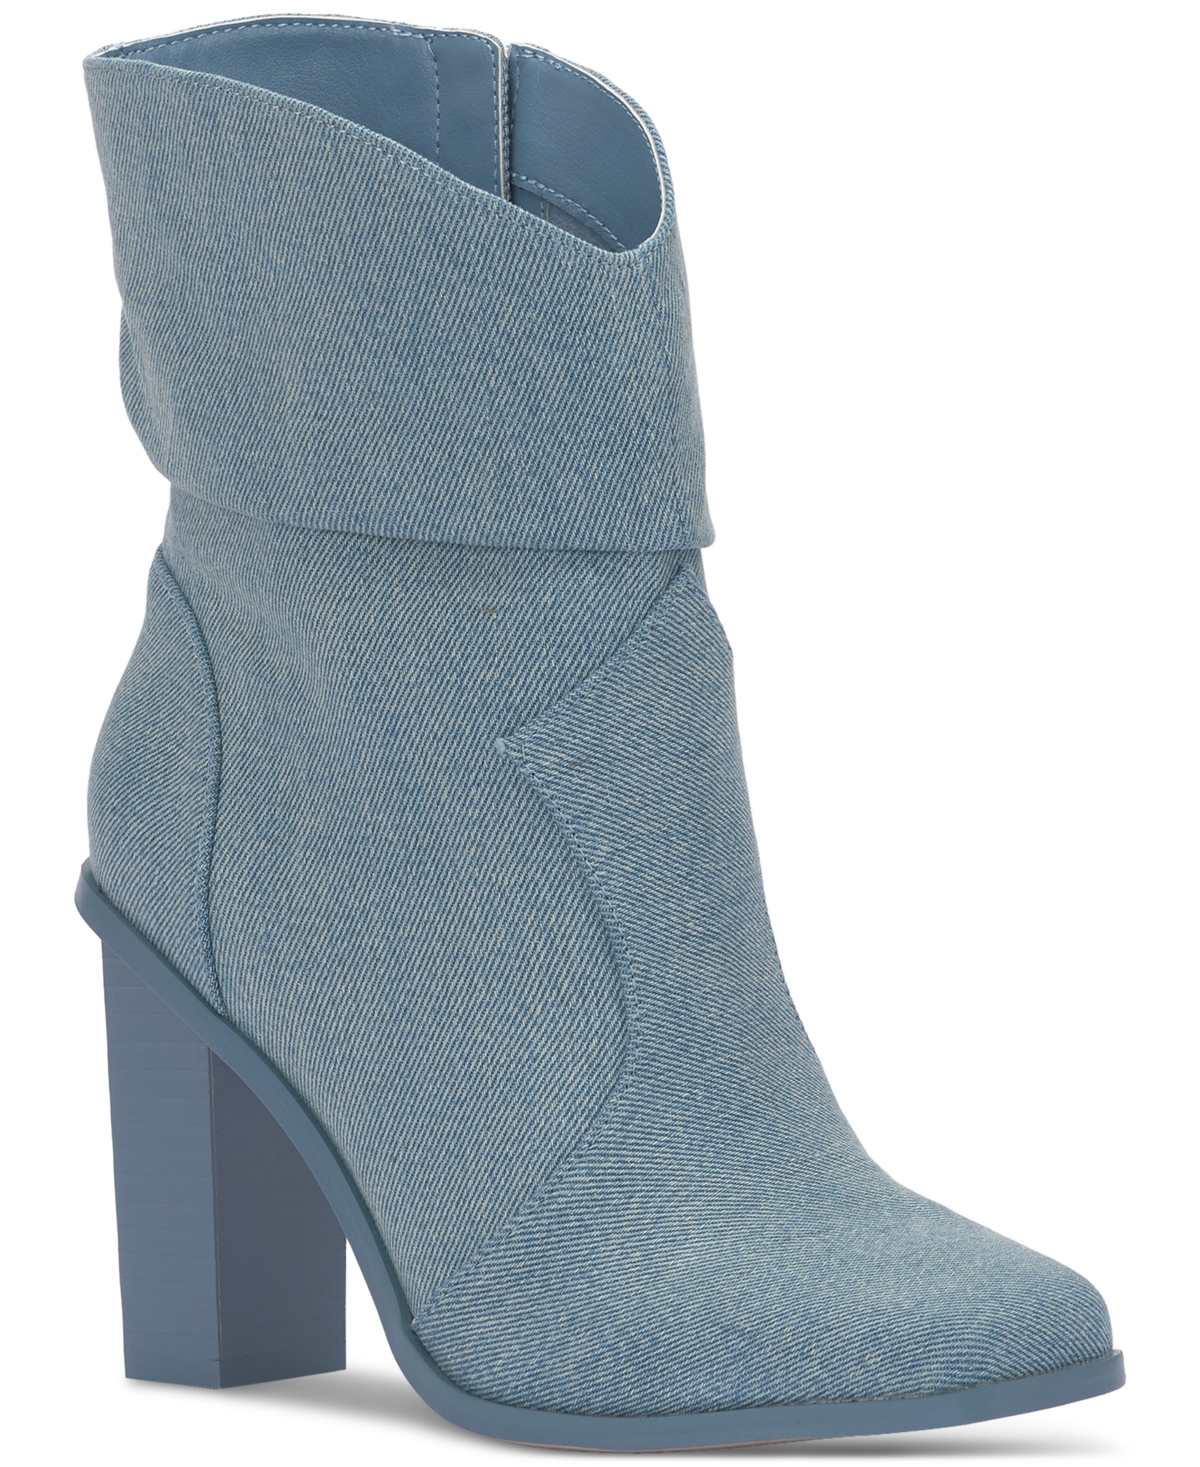 Women's Arrla Block-Heel Booties - Medium Blue